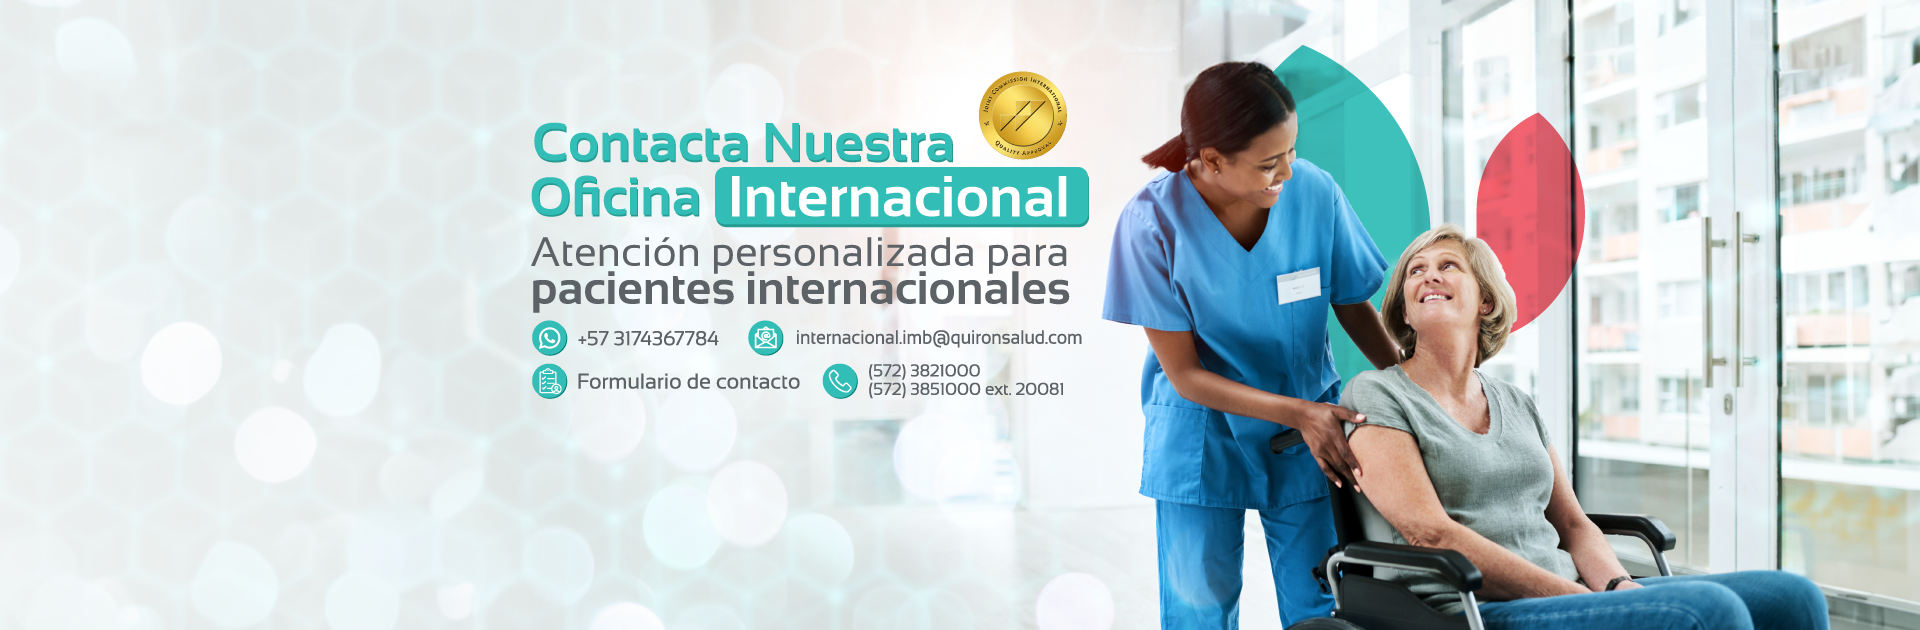 banner-datos-de-contacto-oficina-internacional-clinica-imbanaco